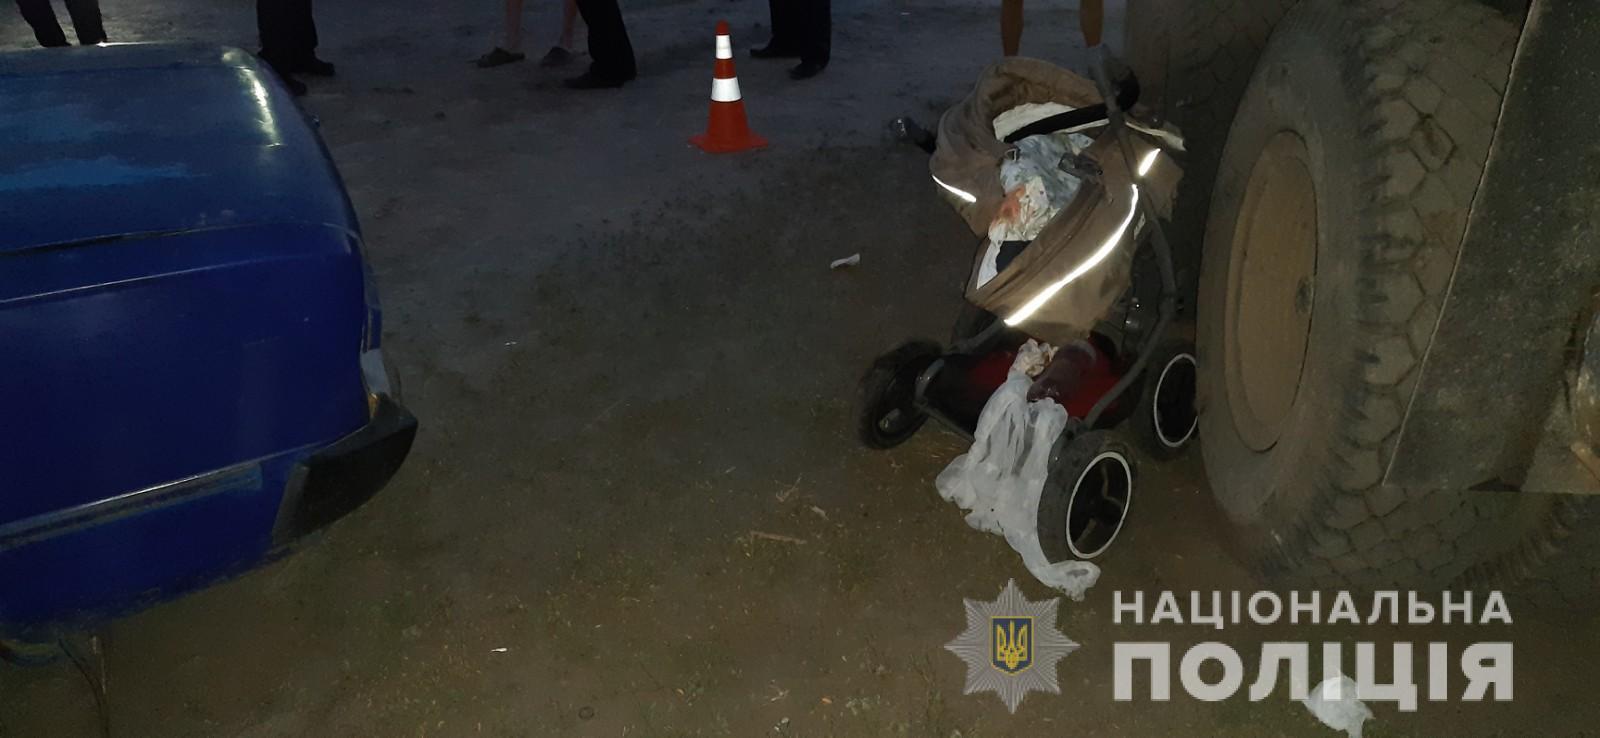 В Харькове в результате ДТП погиб младенец. Фото - сайт Нацполиции в Харьковской области